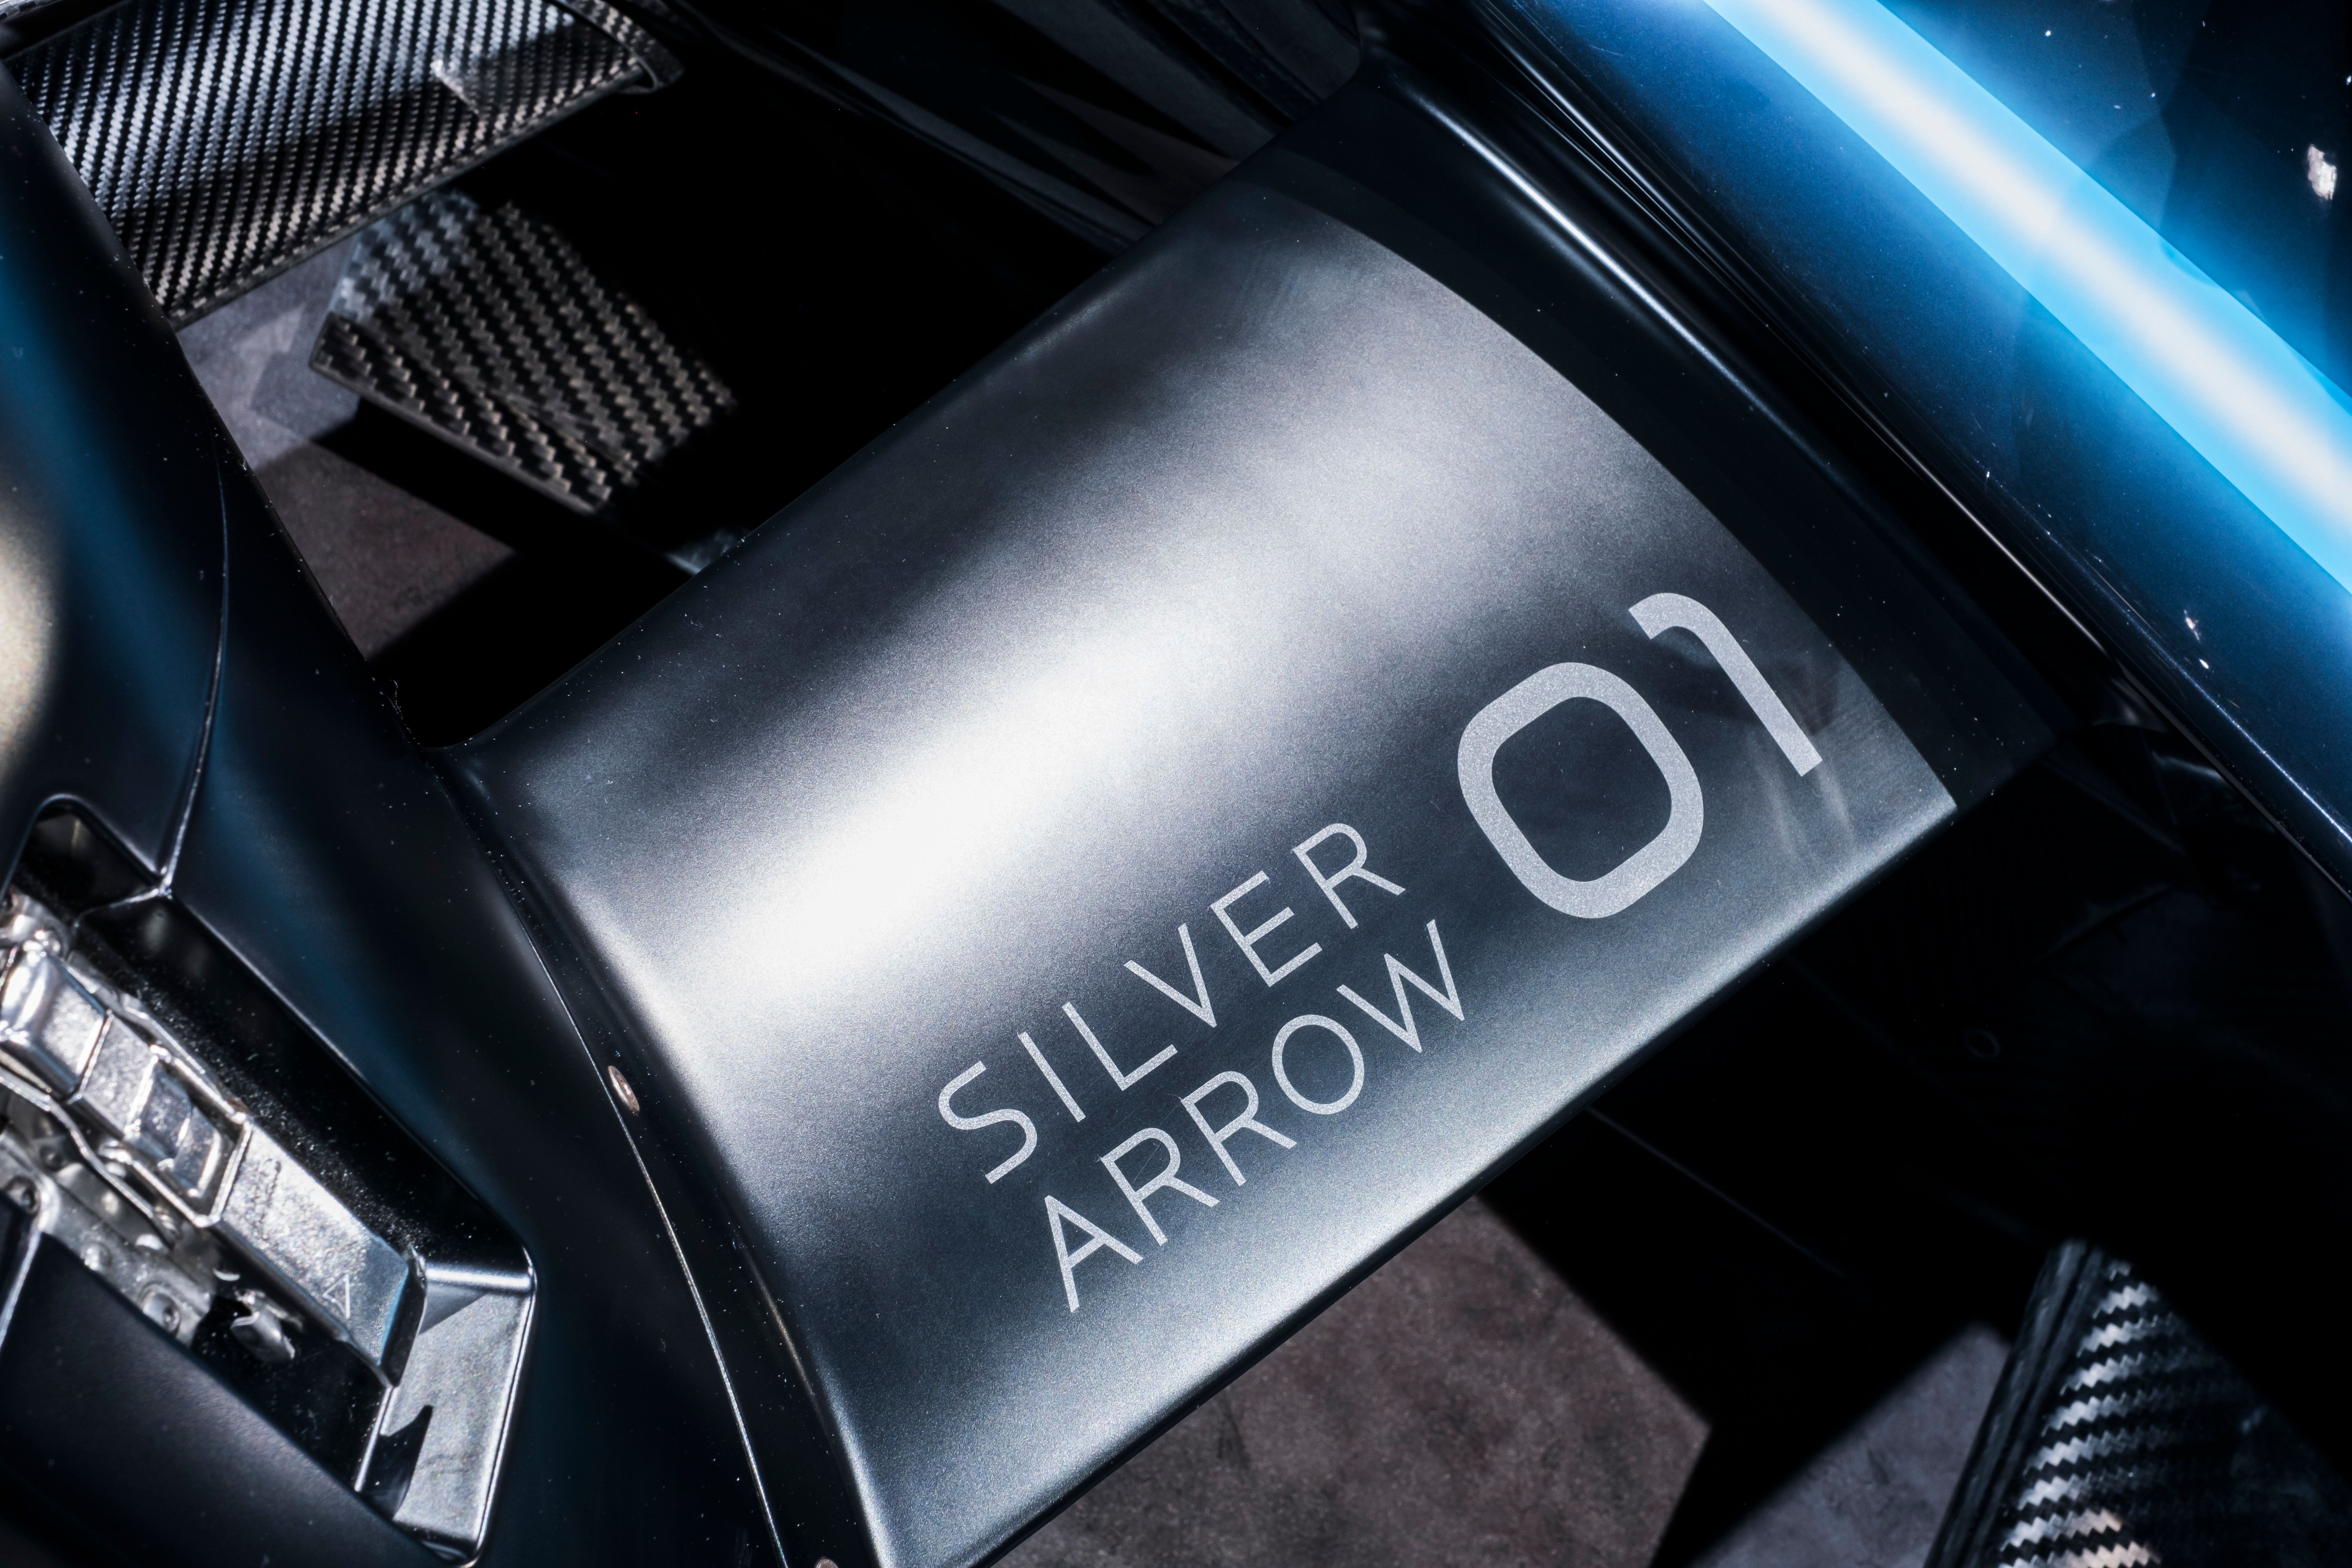 2019 Mercedes-Benz EQ Silver Arrow 01